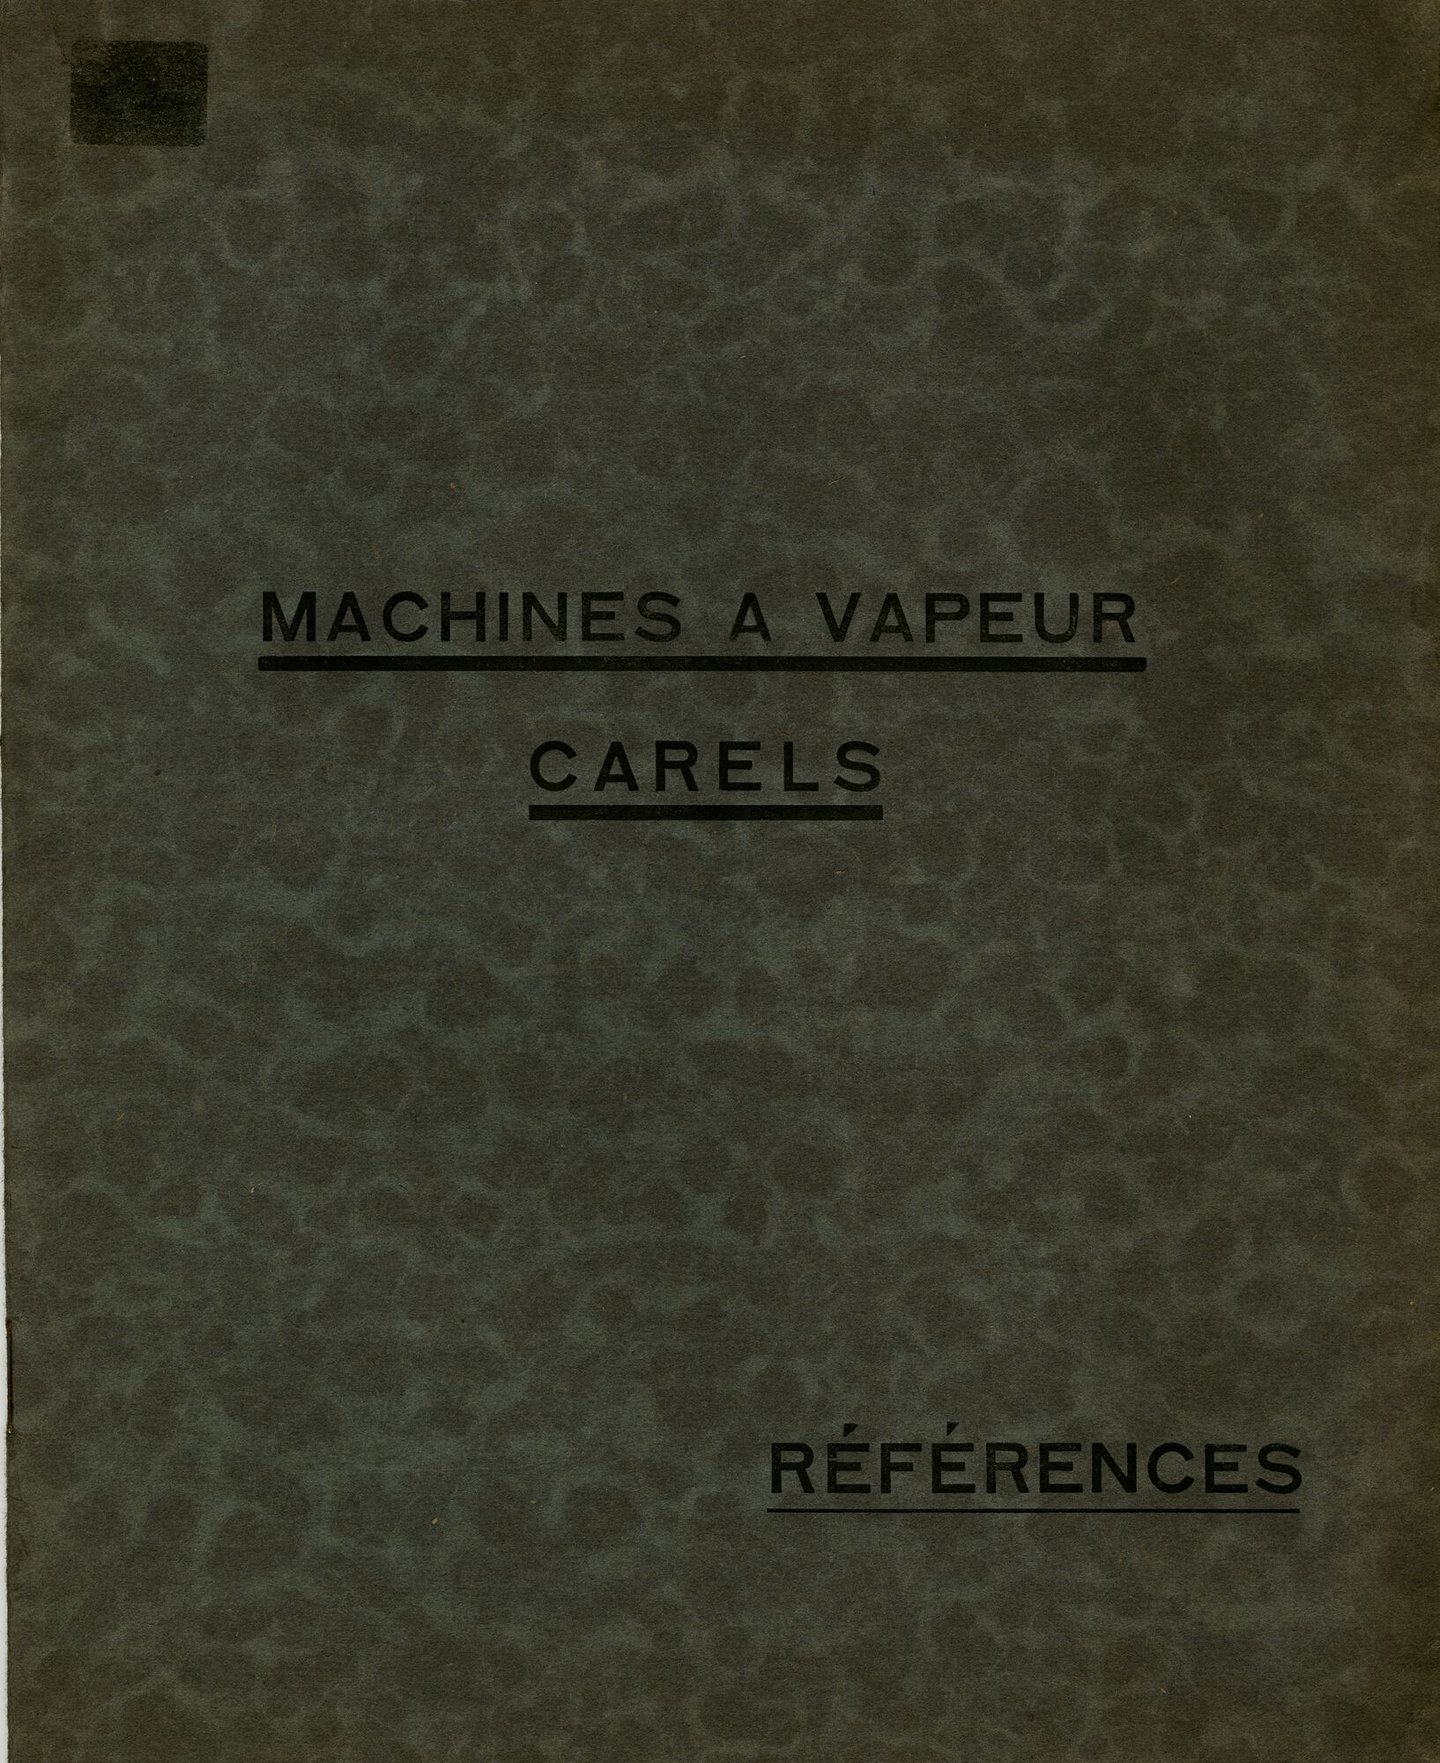 Brochure met referenties van geleverde stoommachines geproduceerd door Carels in Gent